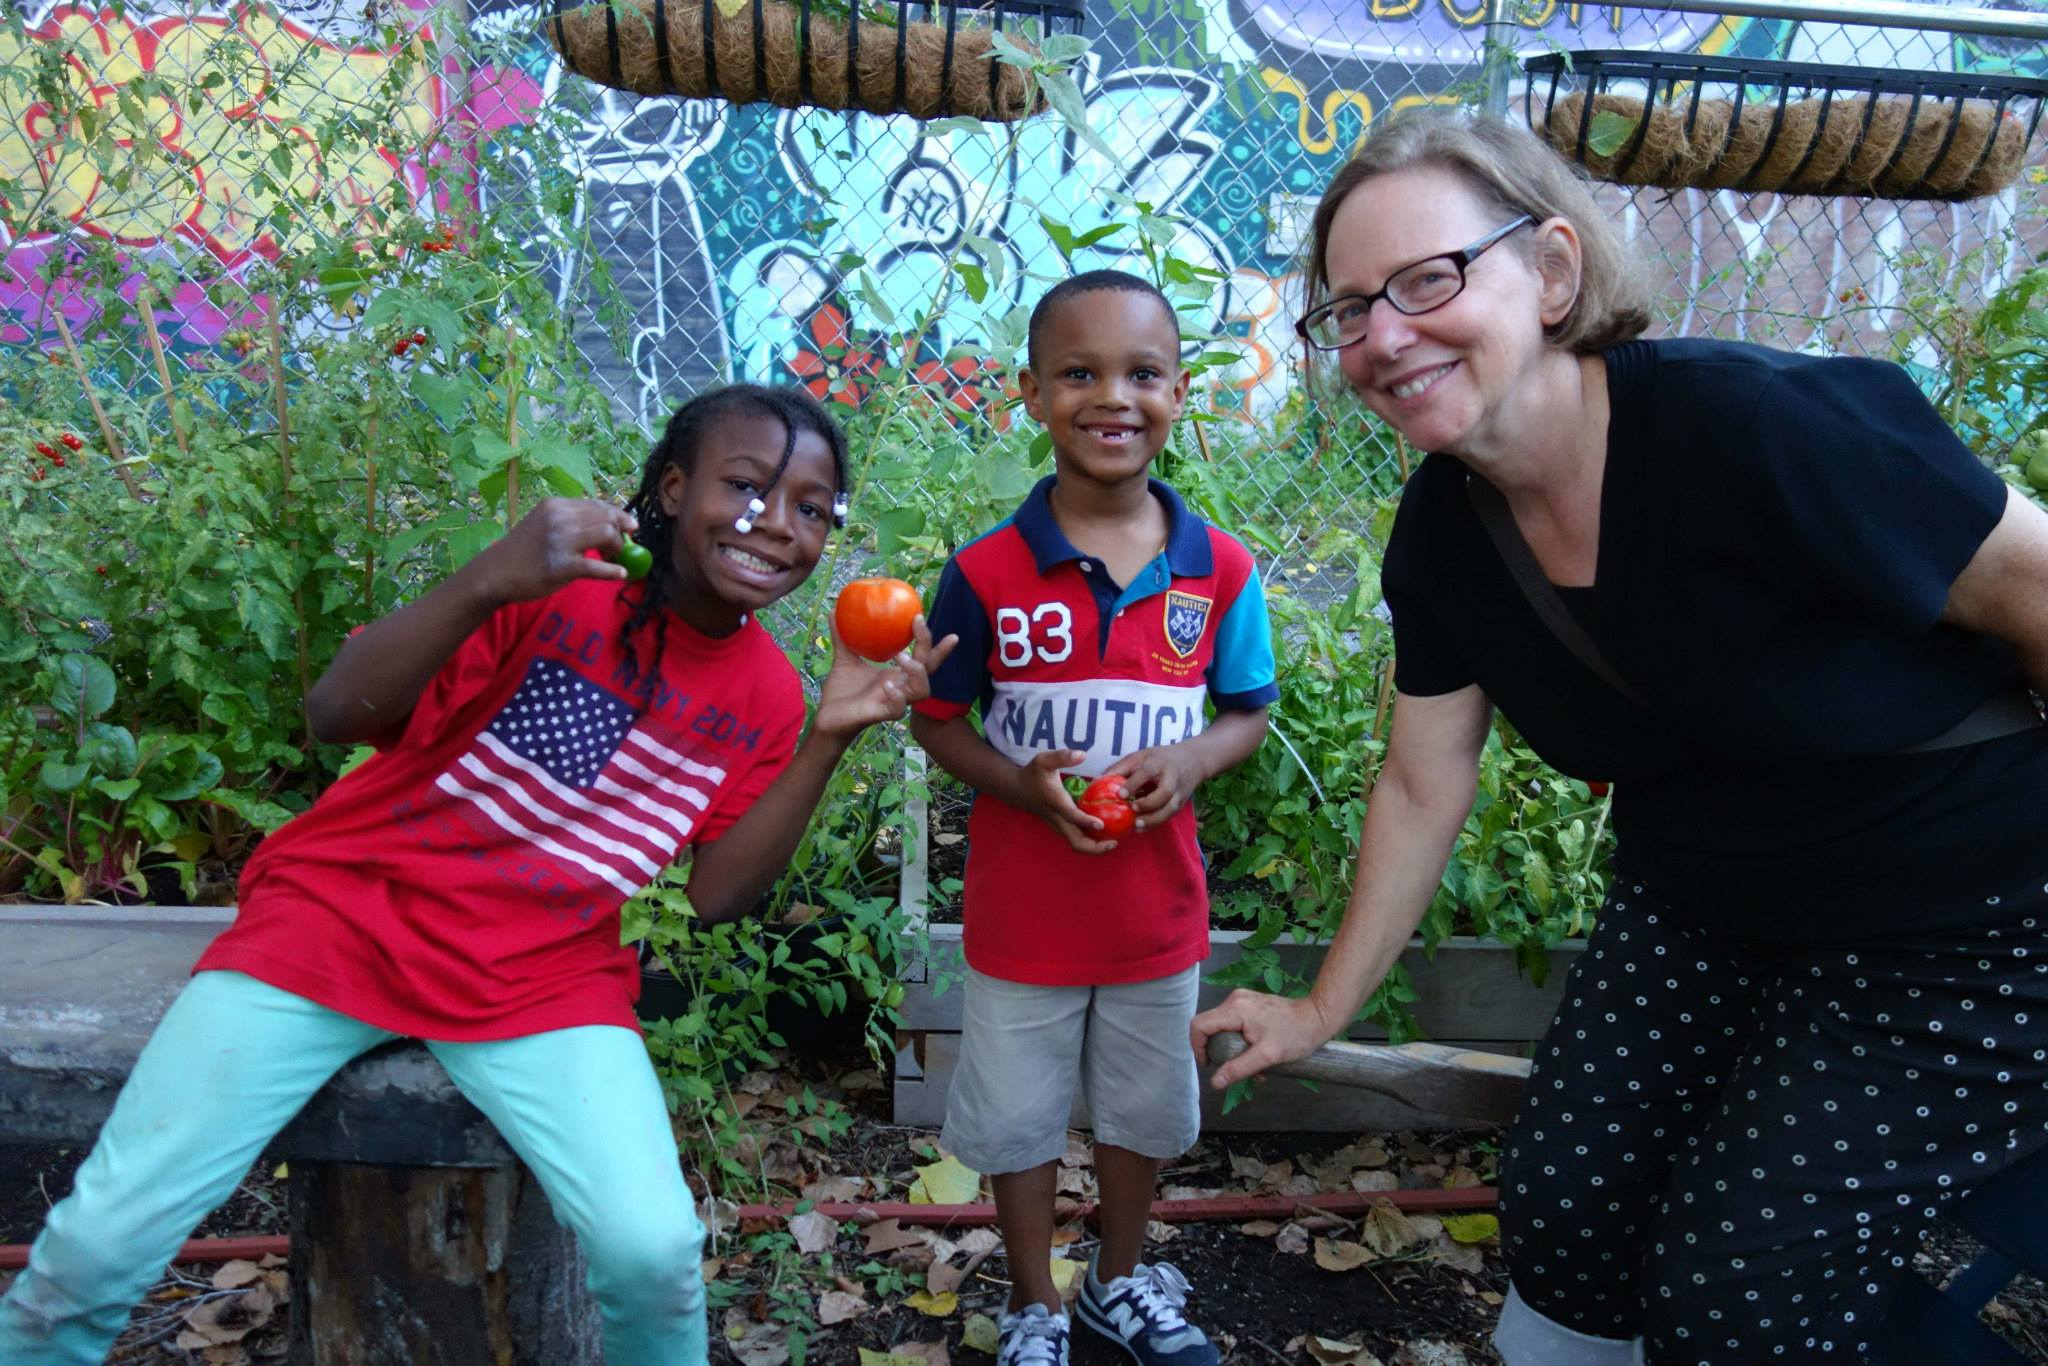 Wendy helped found Siempre Verde Community Garden in 2012